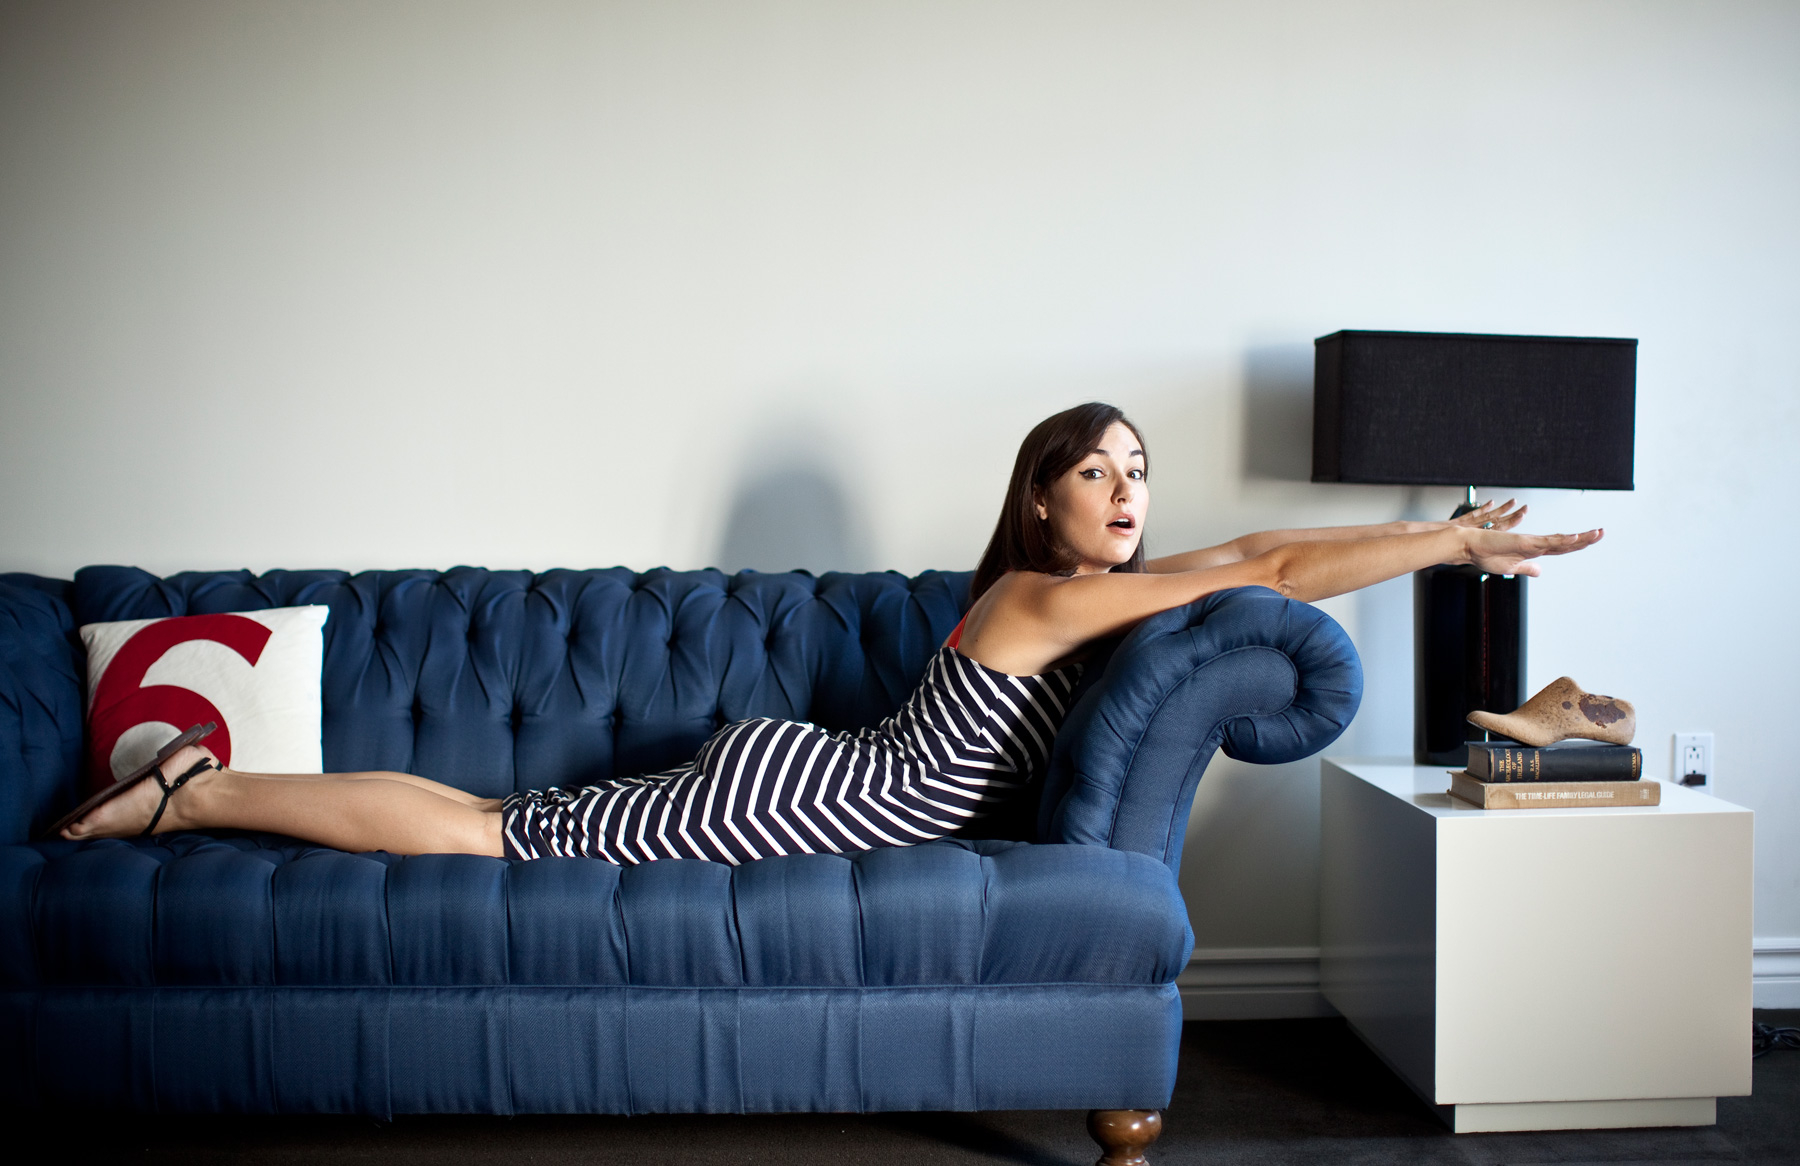 20летняя девушка демонстрирует сочную фигуру на диване и в ванной